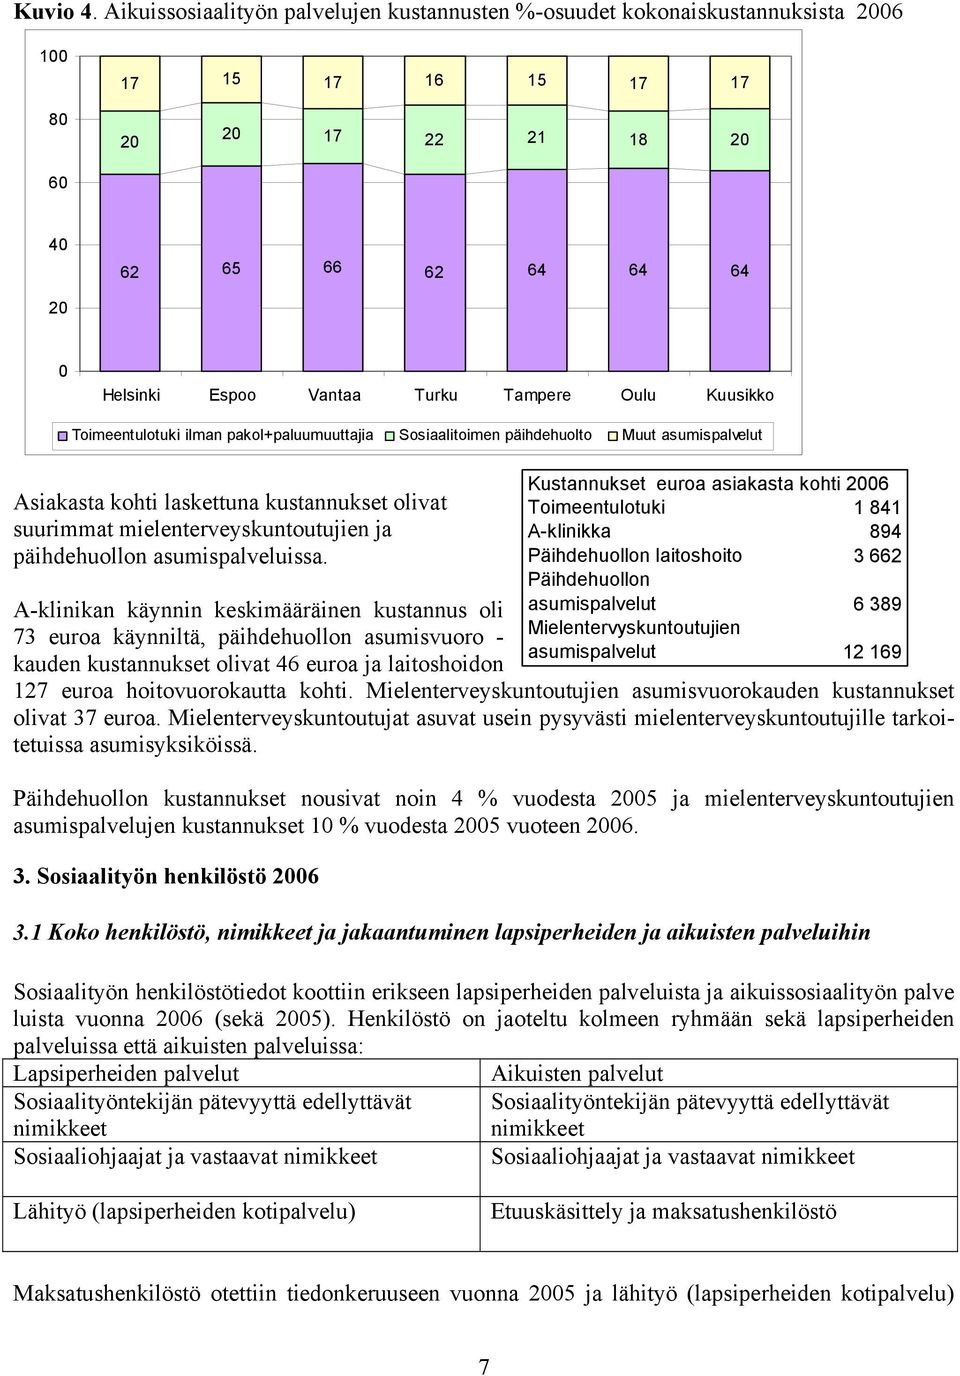 Oulu Kuusikko Toimeentulotuki ilman pakol+paluumuuttajia Sosiaalitoimen päihdehuolto Muut asumispalvelut Asiakasta kohti laskettuna kustannukset olivat suurimmat mielenterveyskuntoutujien ja